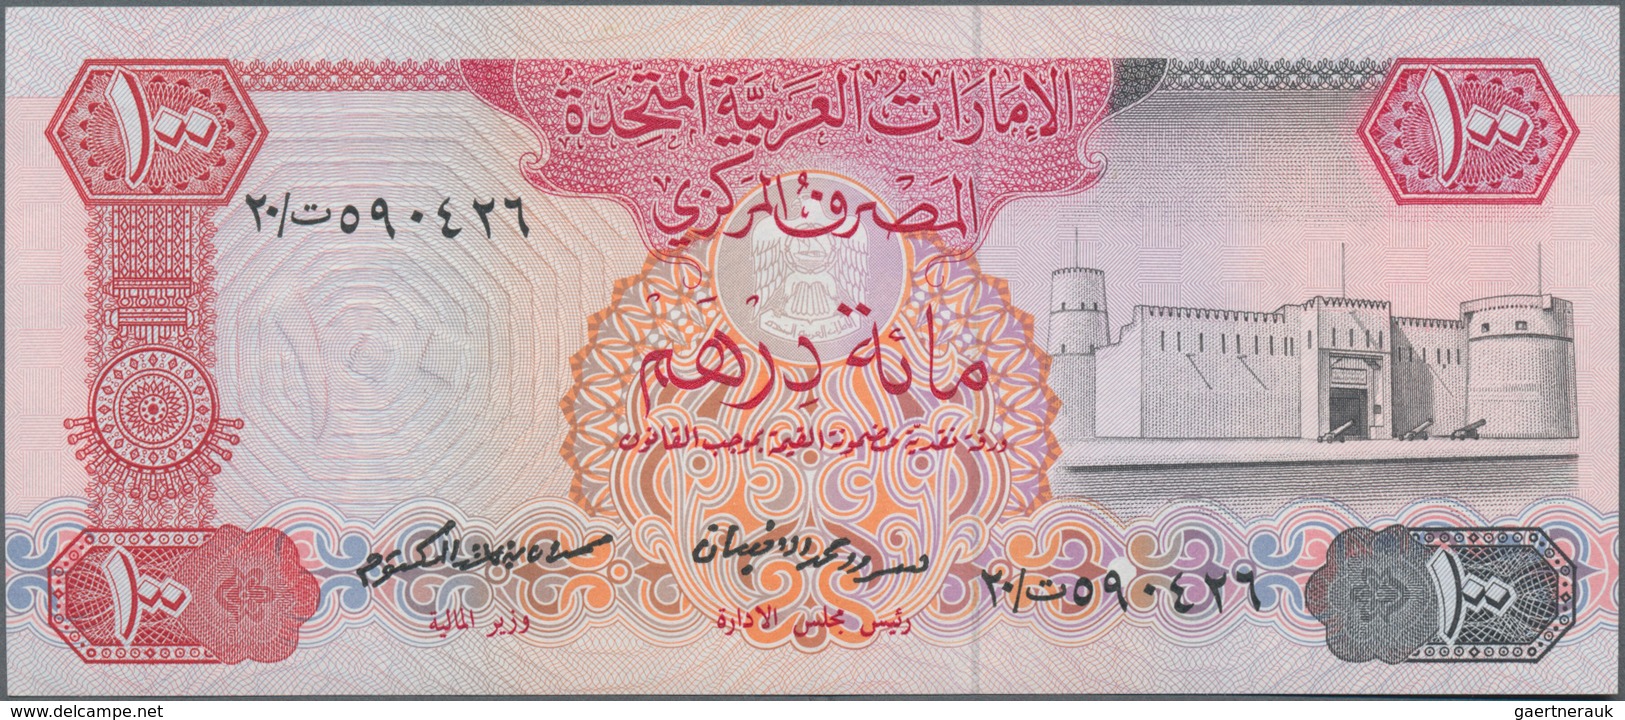 United Arab Emirates / Vereinigte Arabische Emirate: United Arab Emirates Central Bank 100 Dirhams N - Emirats Arabes Unis